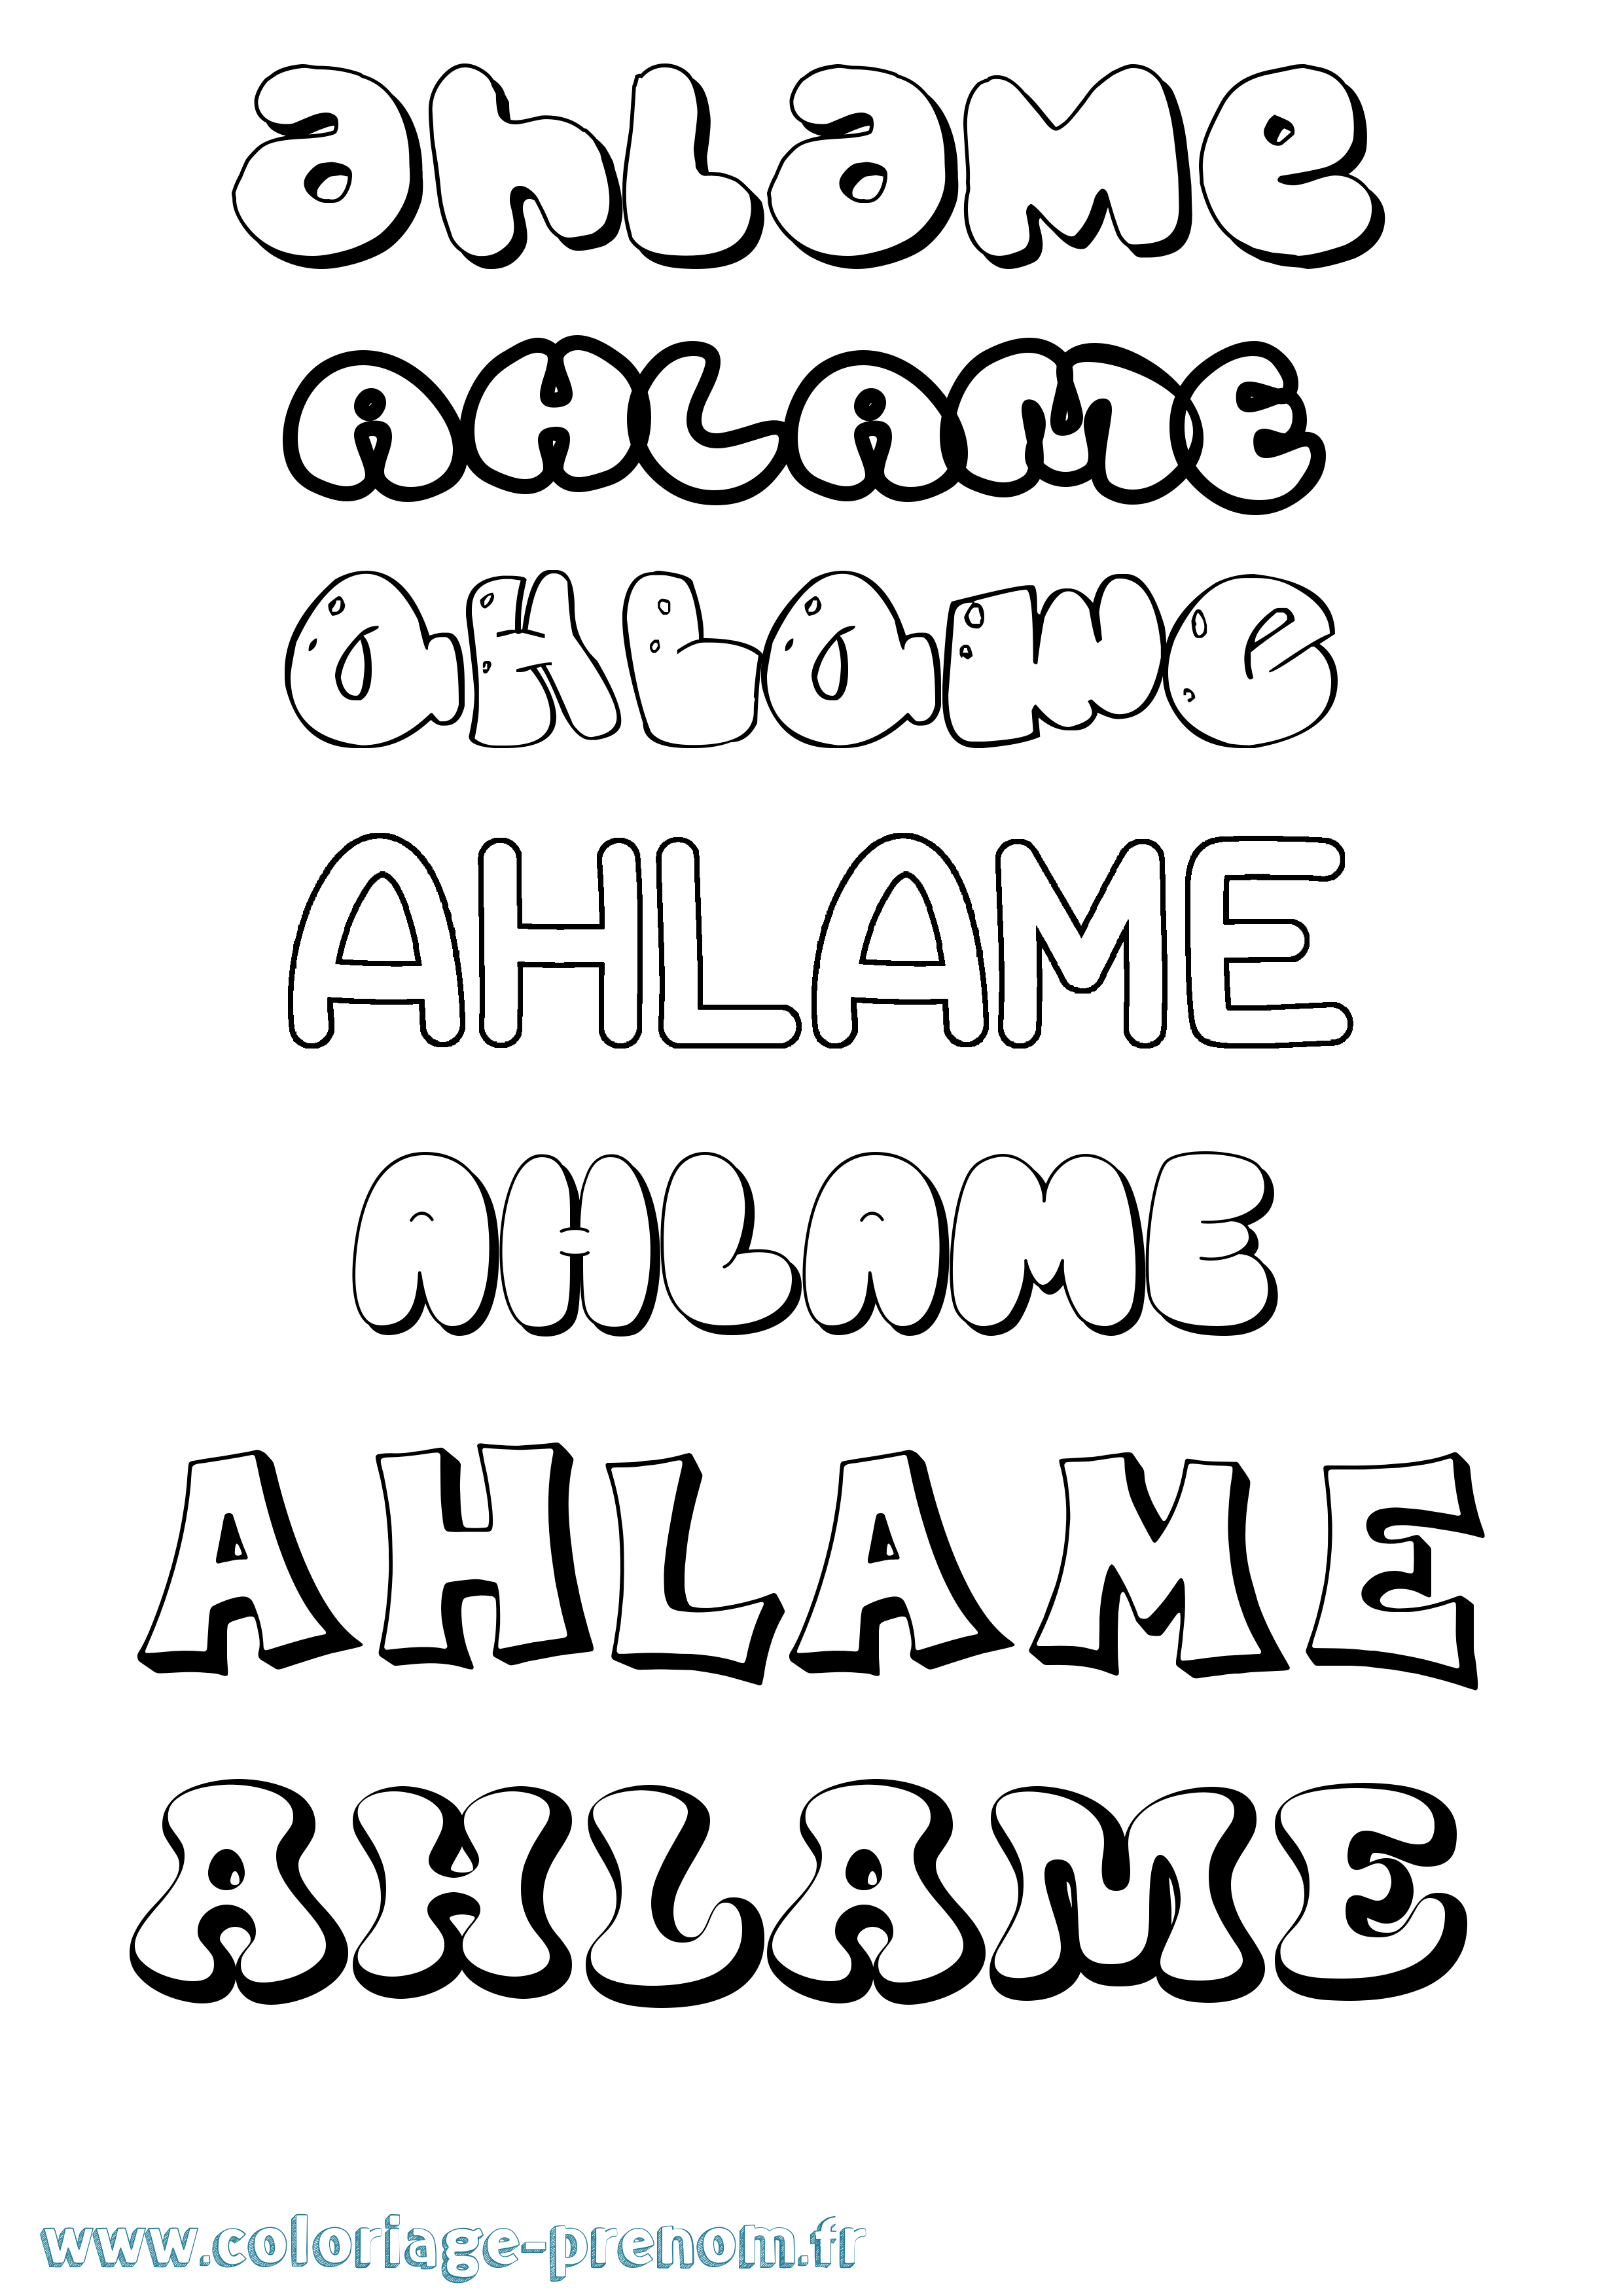 Coloriage prénom Ahlame Bubble